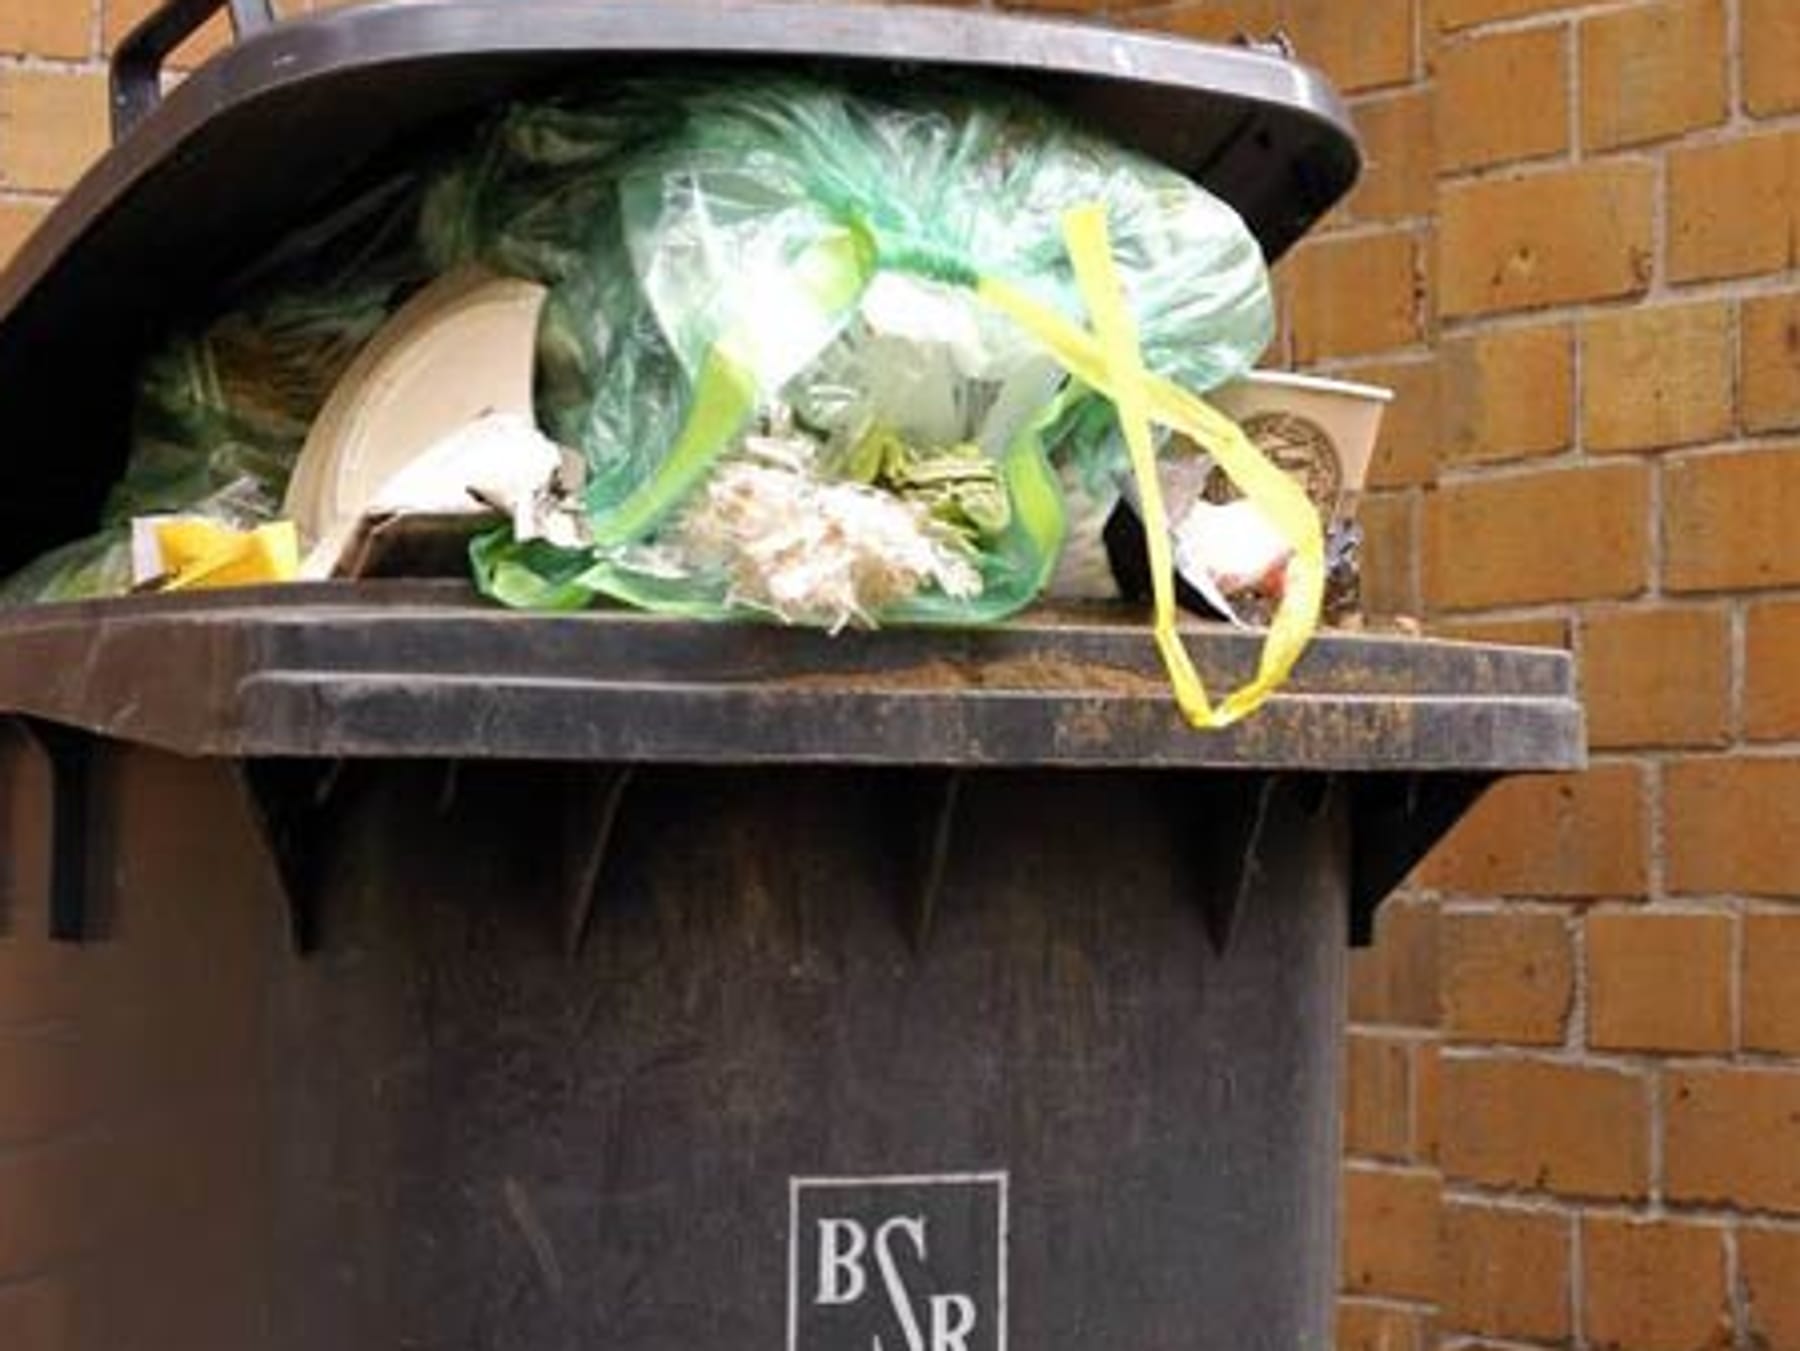 19 Tipps gegen stinkende Mülleimer